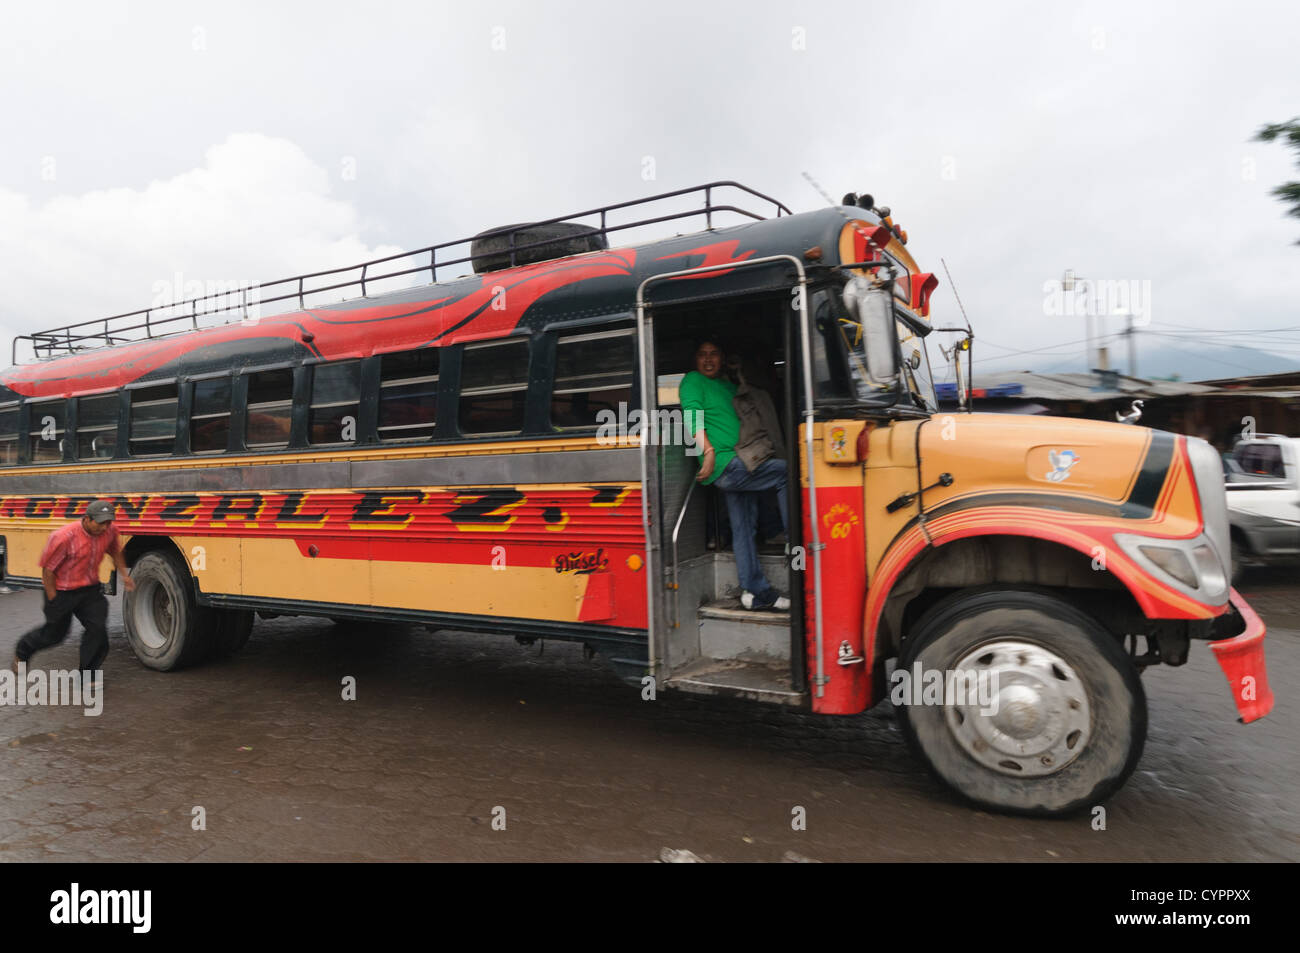 Abfahrt Bus Huhn hinter dem Mercado Municipal (Stadtmarkt) in Antigua, Guatemala. Aus diesem umfangreichen zentralen Busbahnhof strahlenförmig der Routen in Guatemala. Oft bunt bemalt, die Huhn-Busse sind nachgerüsteten amerikanische Schulbusse und bieten ein günstiges Transportmittel im ganzen Land. Stockfoto